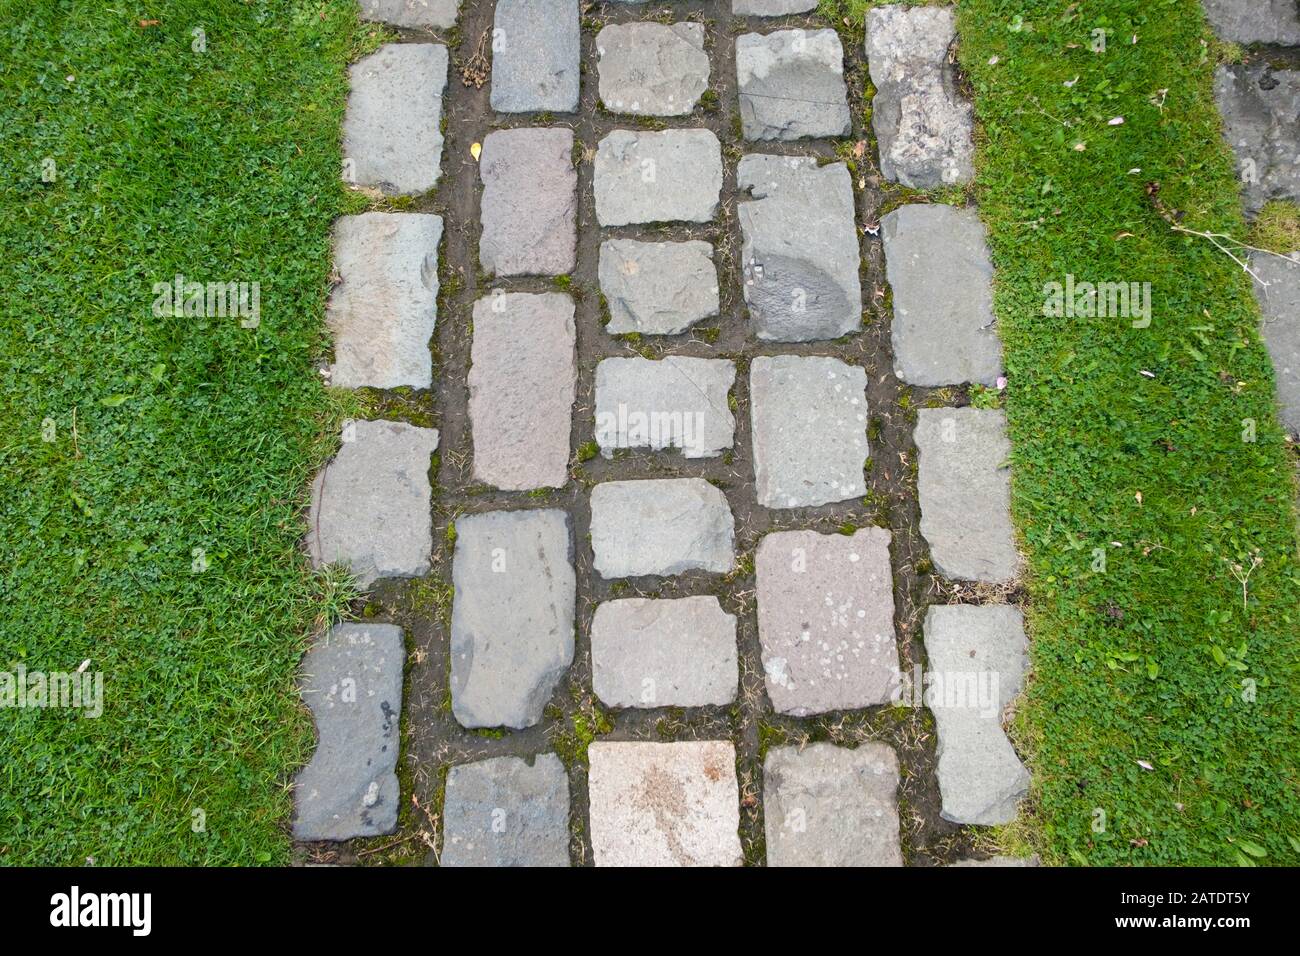 Gros plan de petites dalles de briques pavage dans un réseau pour faire un chemin de jardin dans une pelouse, en Écosse, au Royaume-Uni Banque D'Images